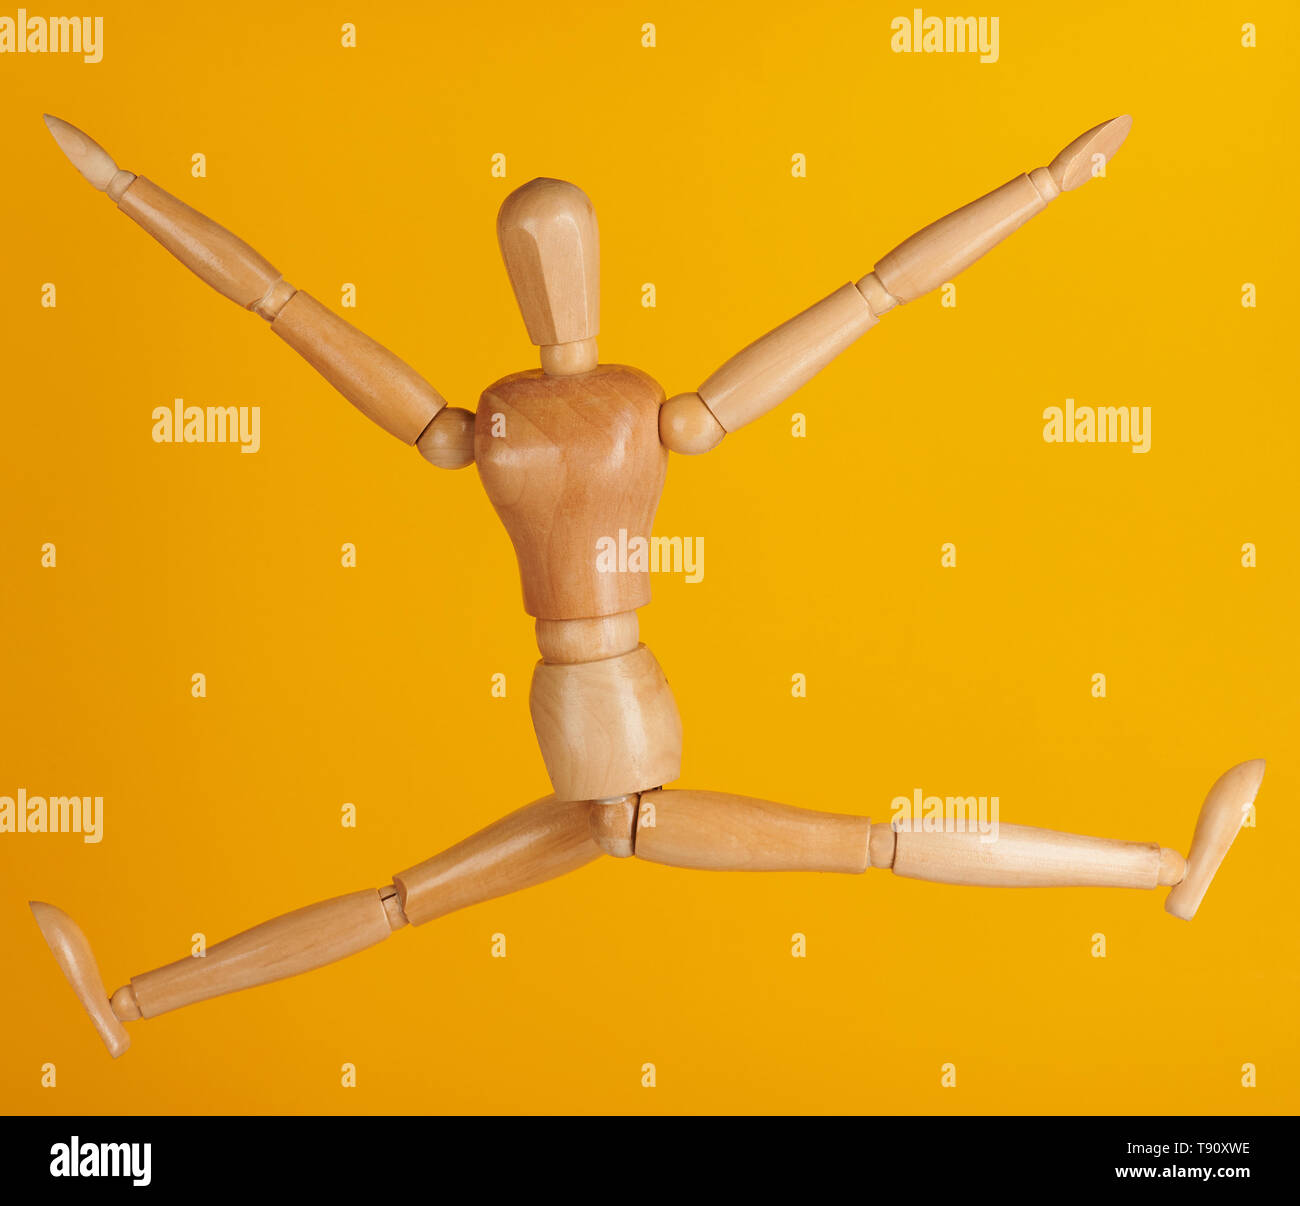 Felice giocattolo in salto in aria pongono isolato su sfondo giallo Foto Stock